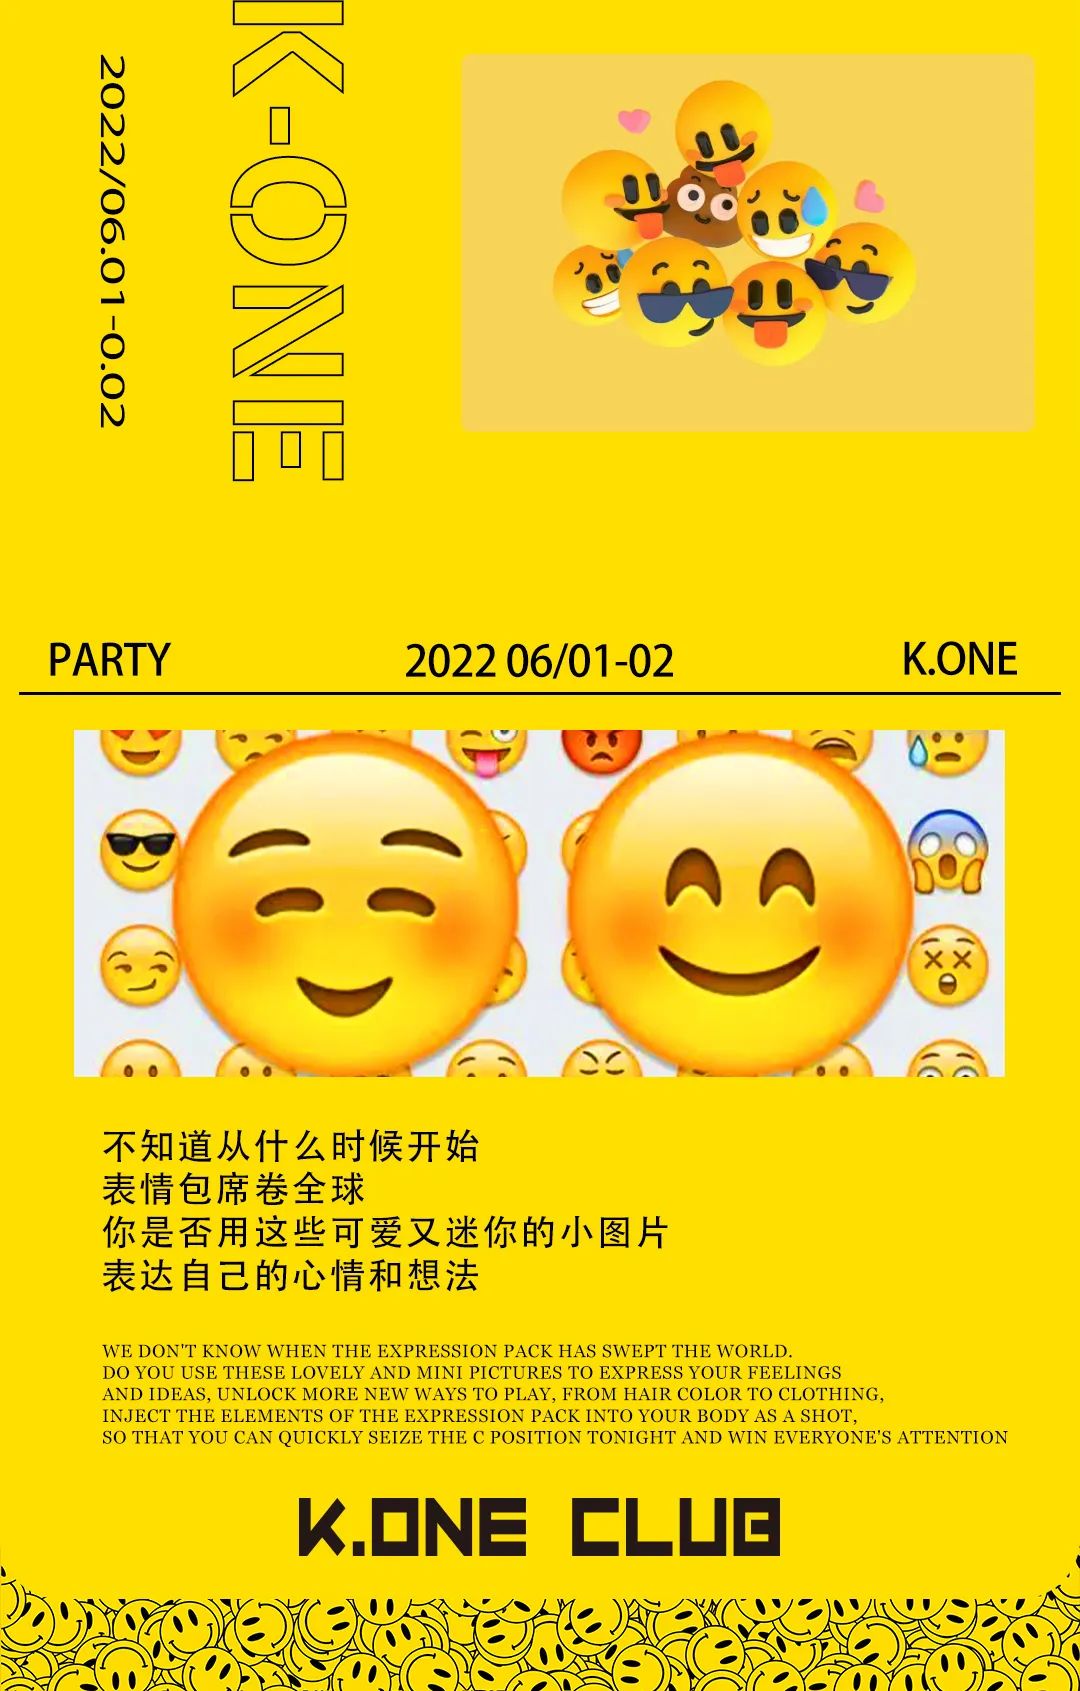 K.ONE CLUB丨2022.06.01-06.02 置身黄色海洋一起畅享，重置你的快乐.承包你的笑脸- 置身黄色海洋一起畅享-厦门KO酒吧/KONE CLUB